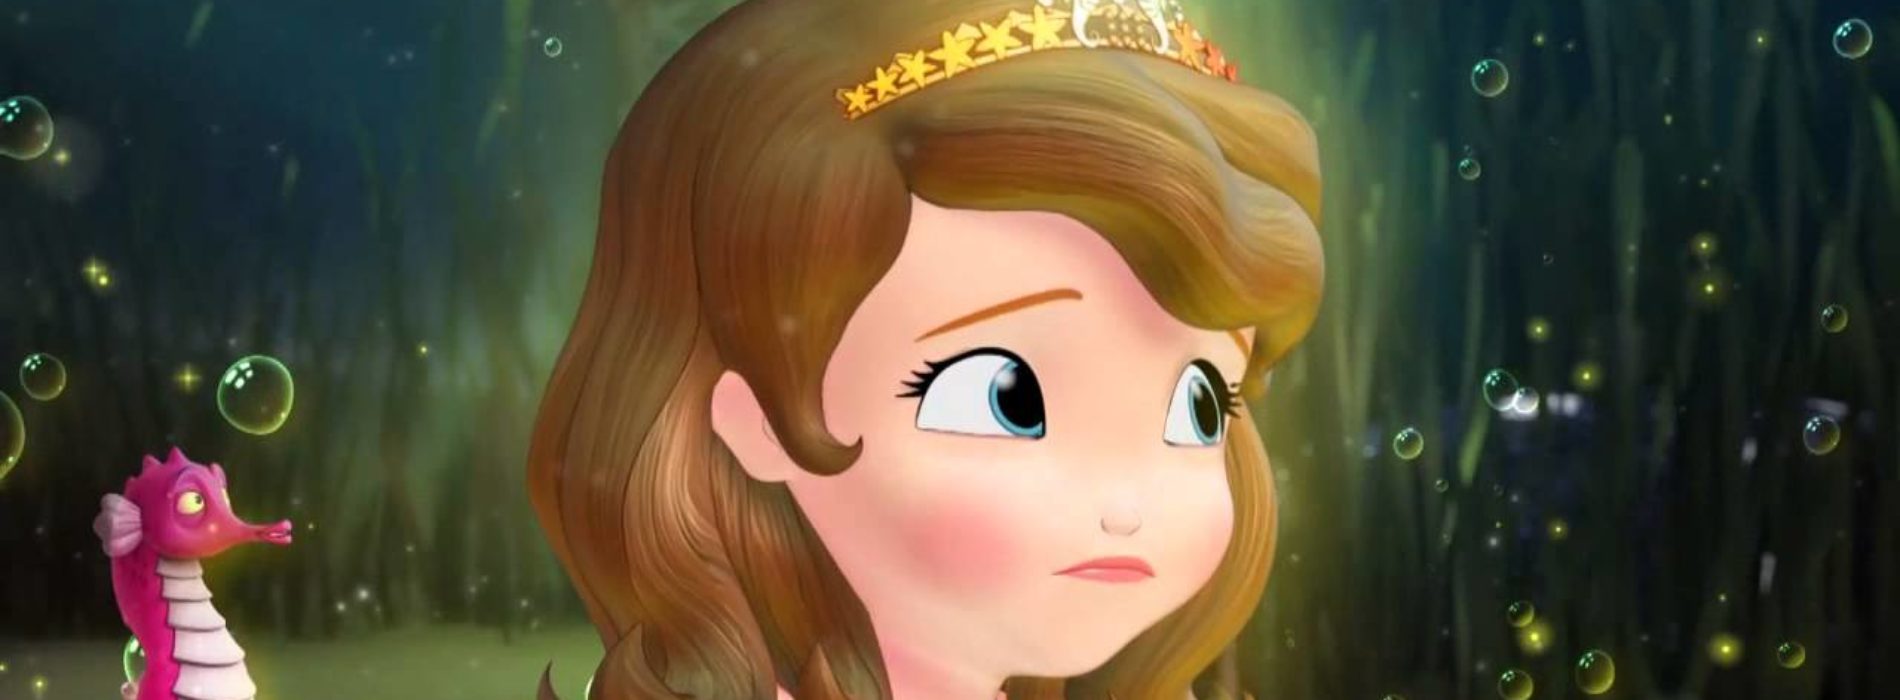 Desene animate Sofia Intai la Disney Channel Junior